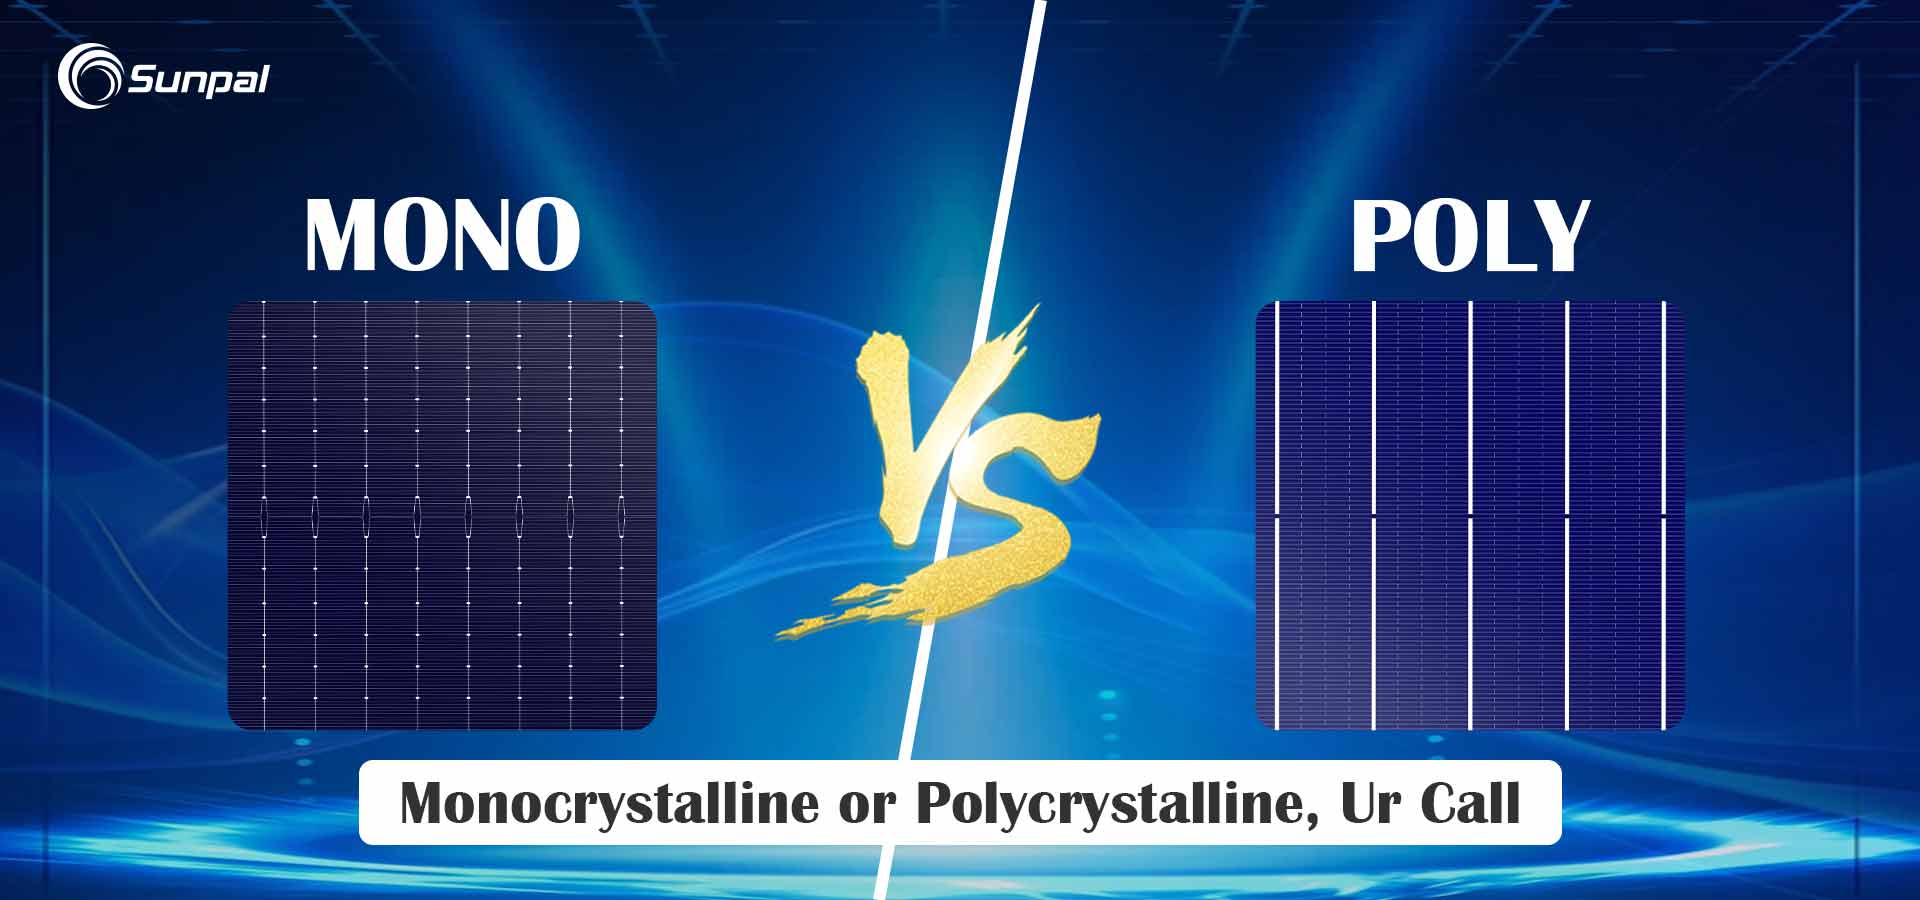 Hocheffiziente Mono- und Poly-Solarmodule: Ein Vergleich